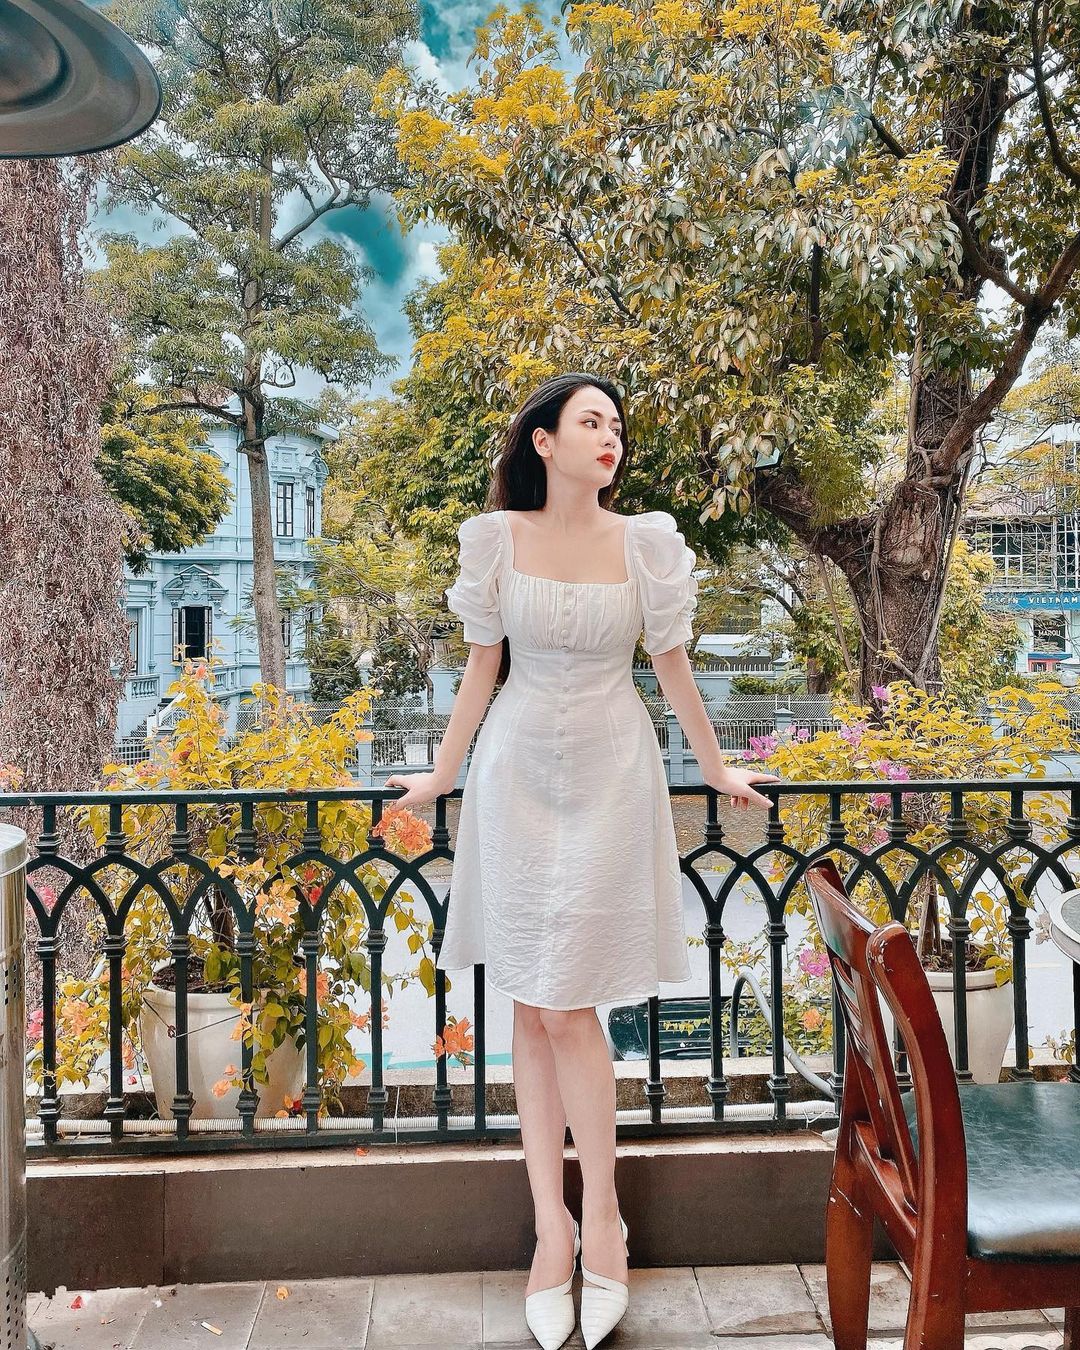 Mỹ nhân “mặc đẹp nhất phim Việt” sắm đồ local brand như cơm bữa, gu thời trang sành điệu cực đáng để chị em follow - Ảnh 3.